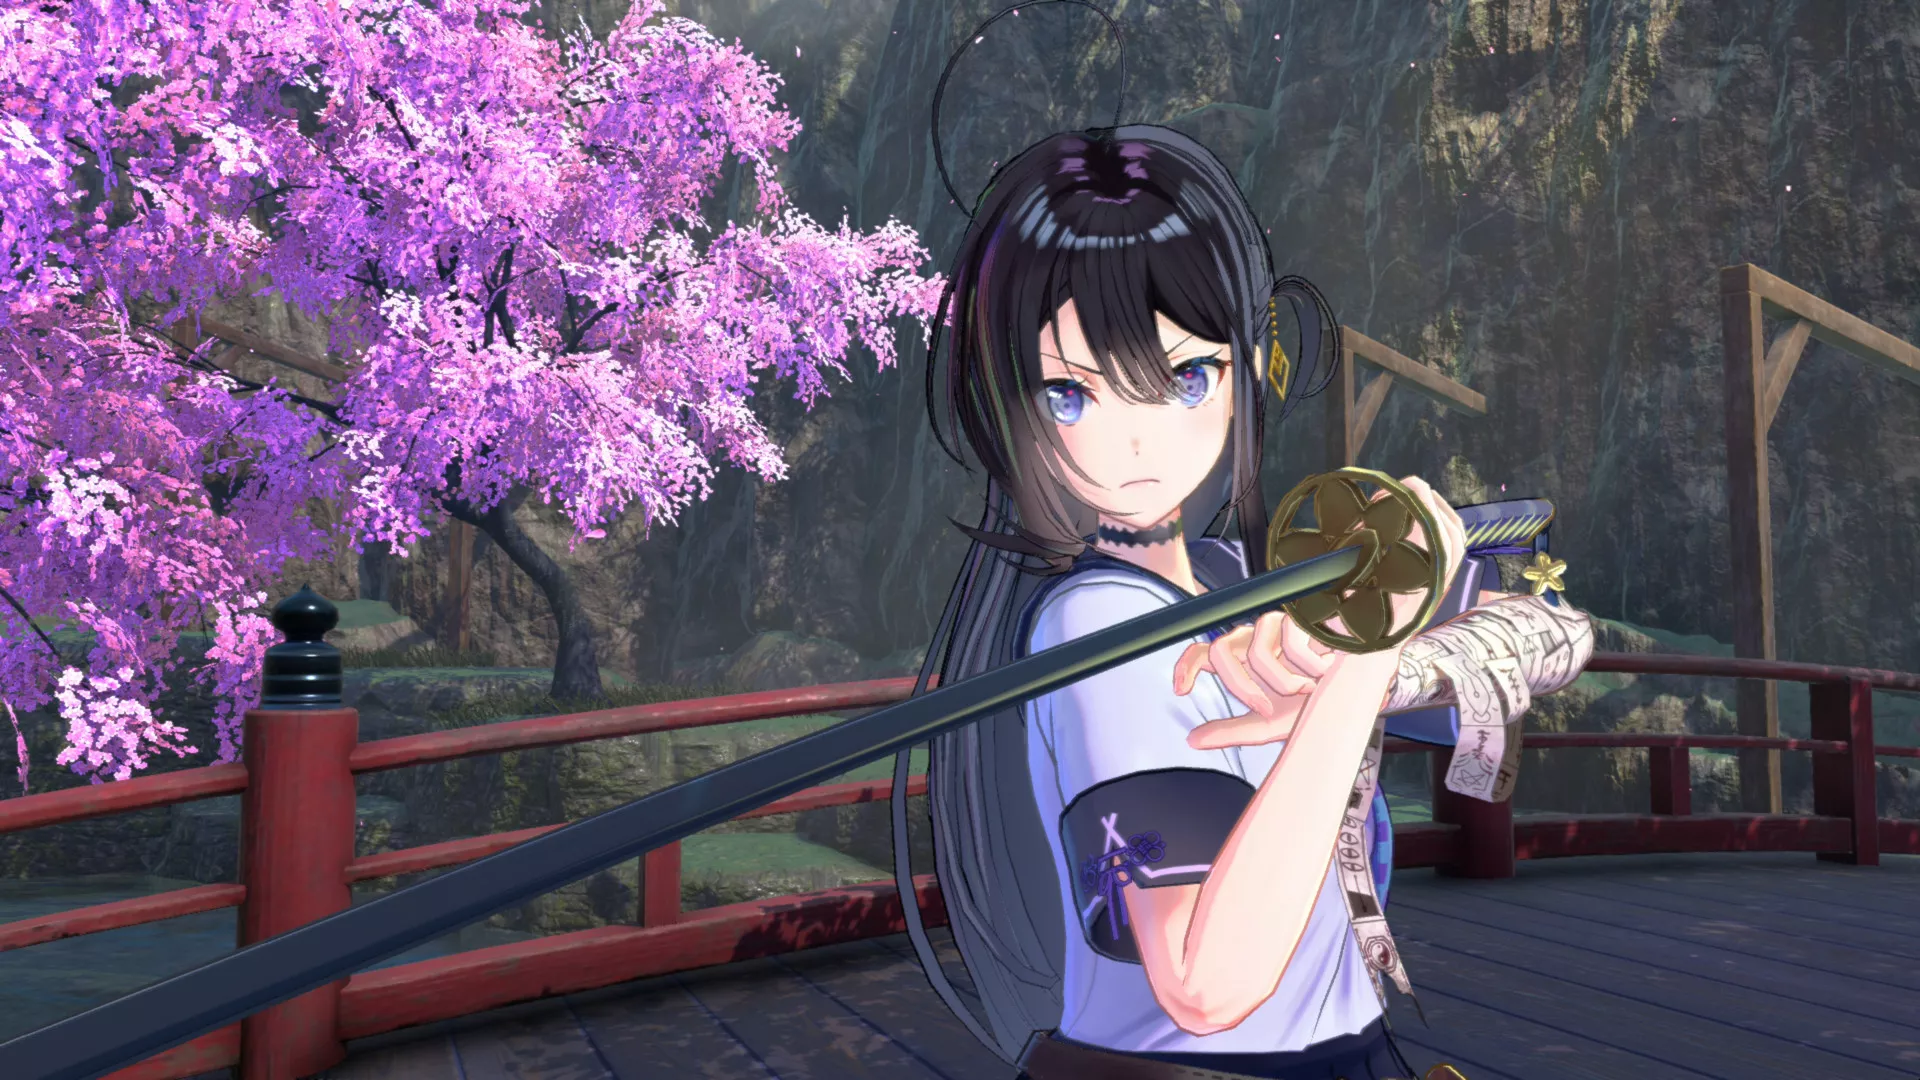 Samurai Maiden: Samurais waren grundsätzlich hübsche Mädchen und haben mit ihrer Kleidung heutige Schuluniformen beeinflusst  Heropic